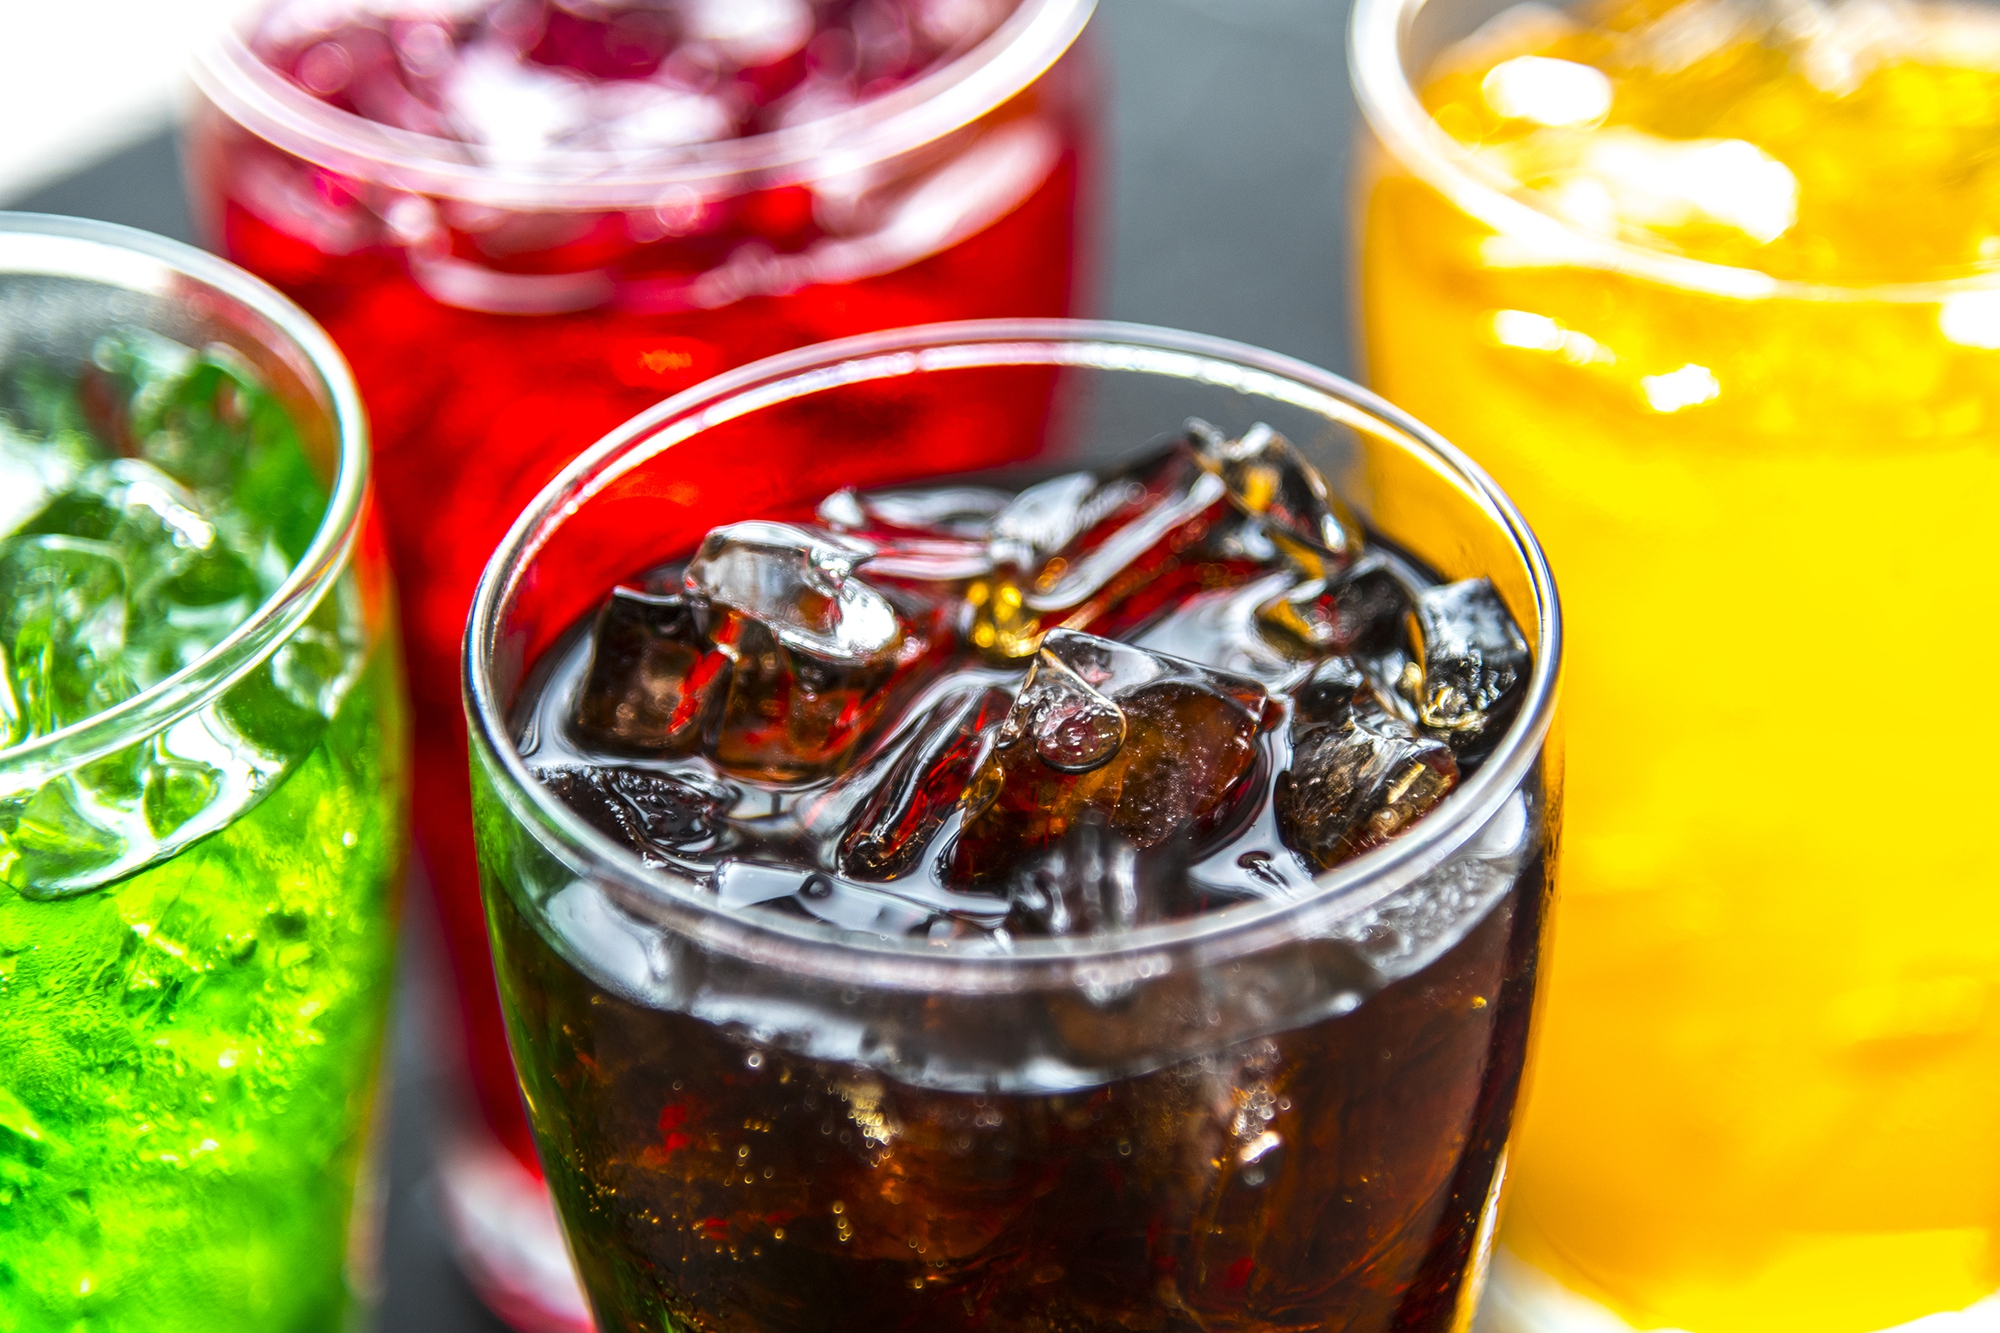 5 thói quen khi uống giúp bạn tránh xa gan nhiễm mỡ - Ảnh 2.